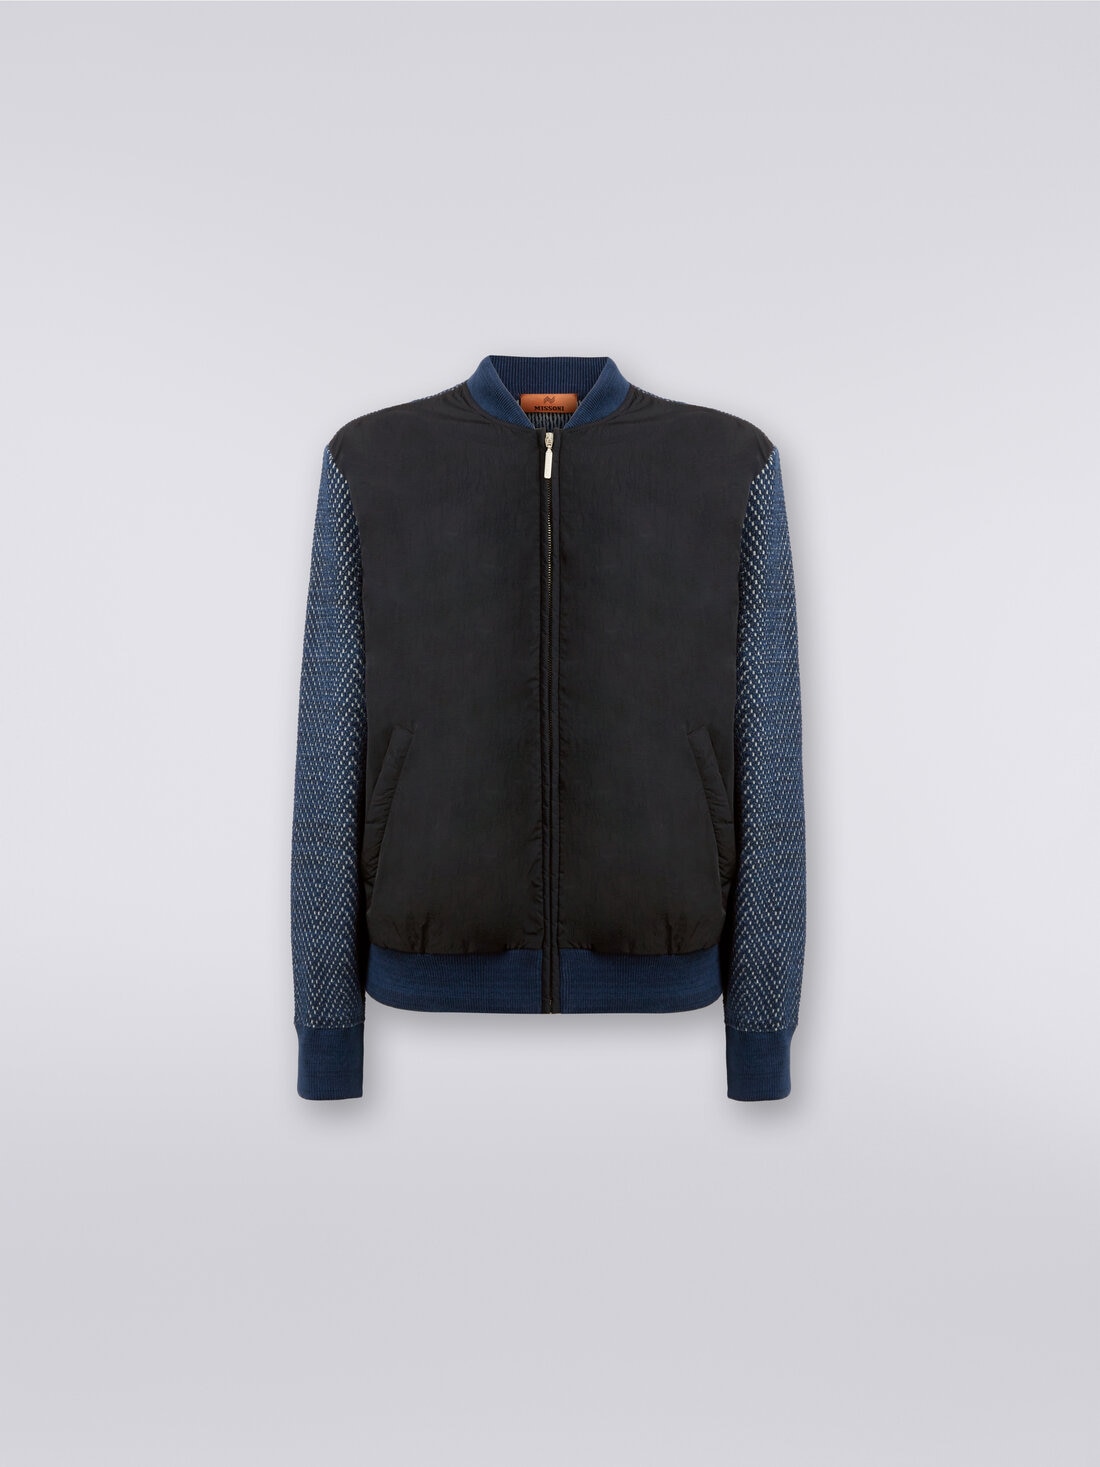 Cotton and nylon blend bomber jacket, Blue & Grey  - US23WC0ZBK030SSM96A - 0